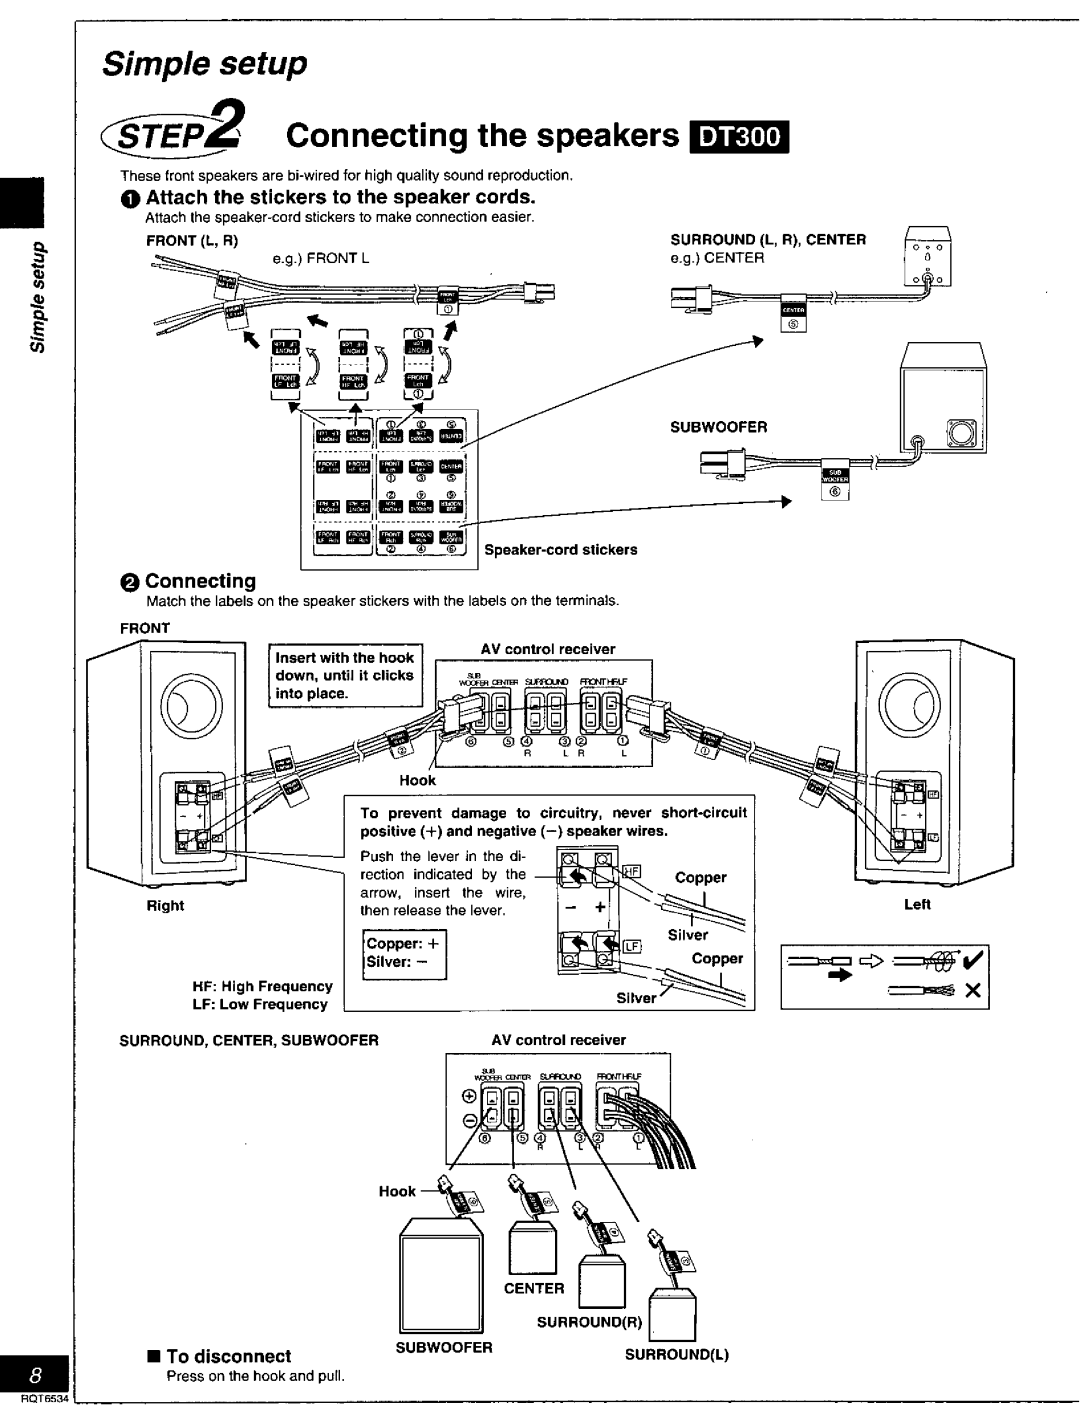 Panasonic SC-DT100, SC-DT300 manual 